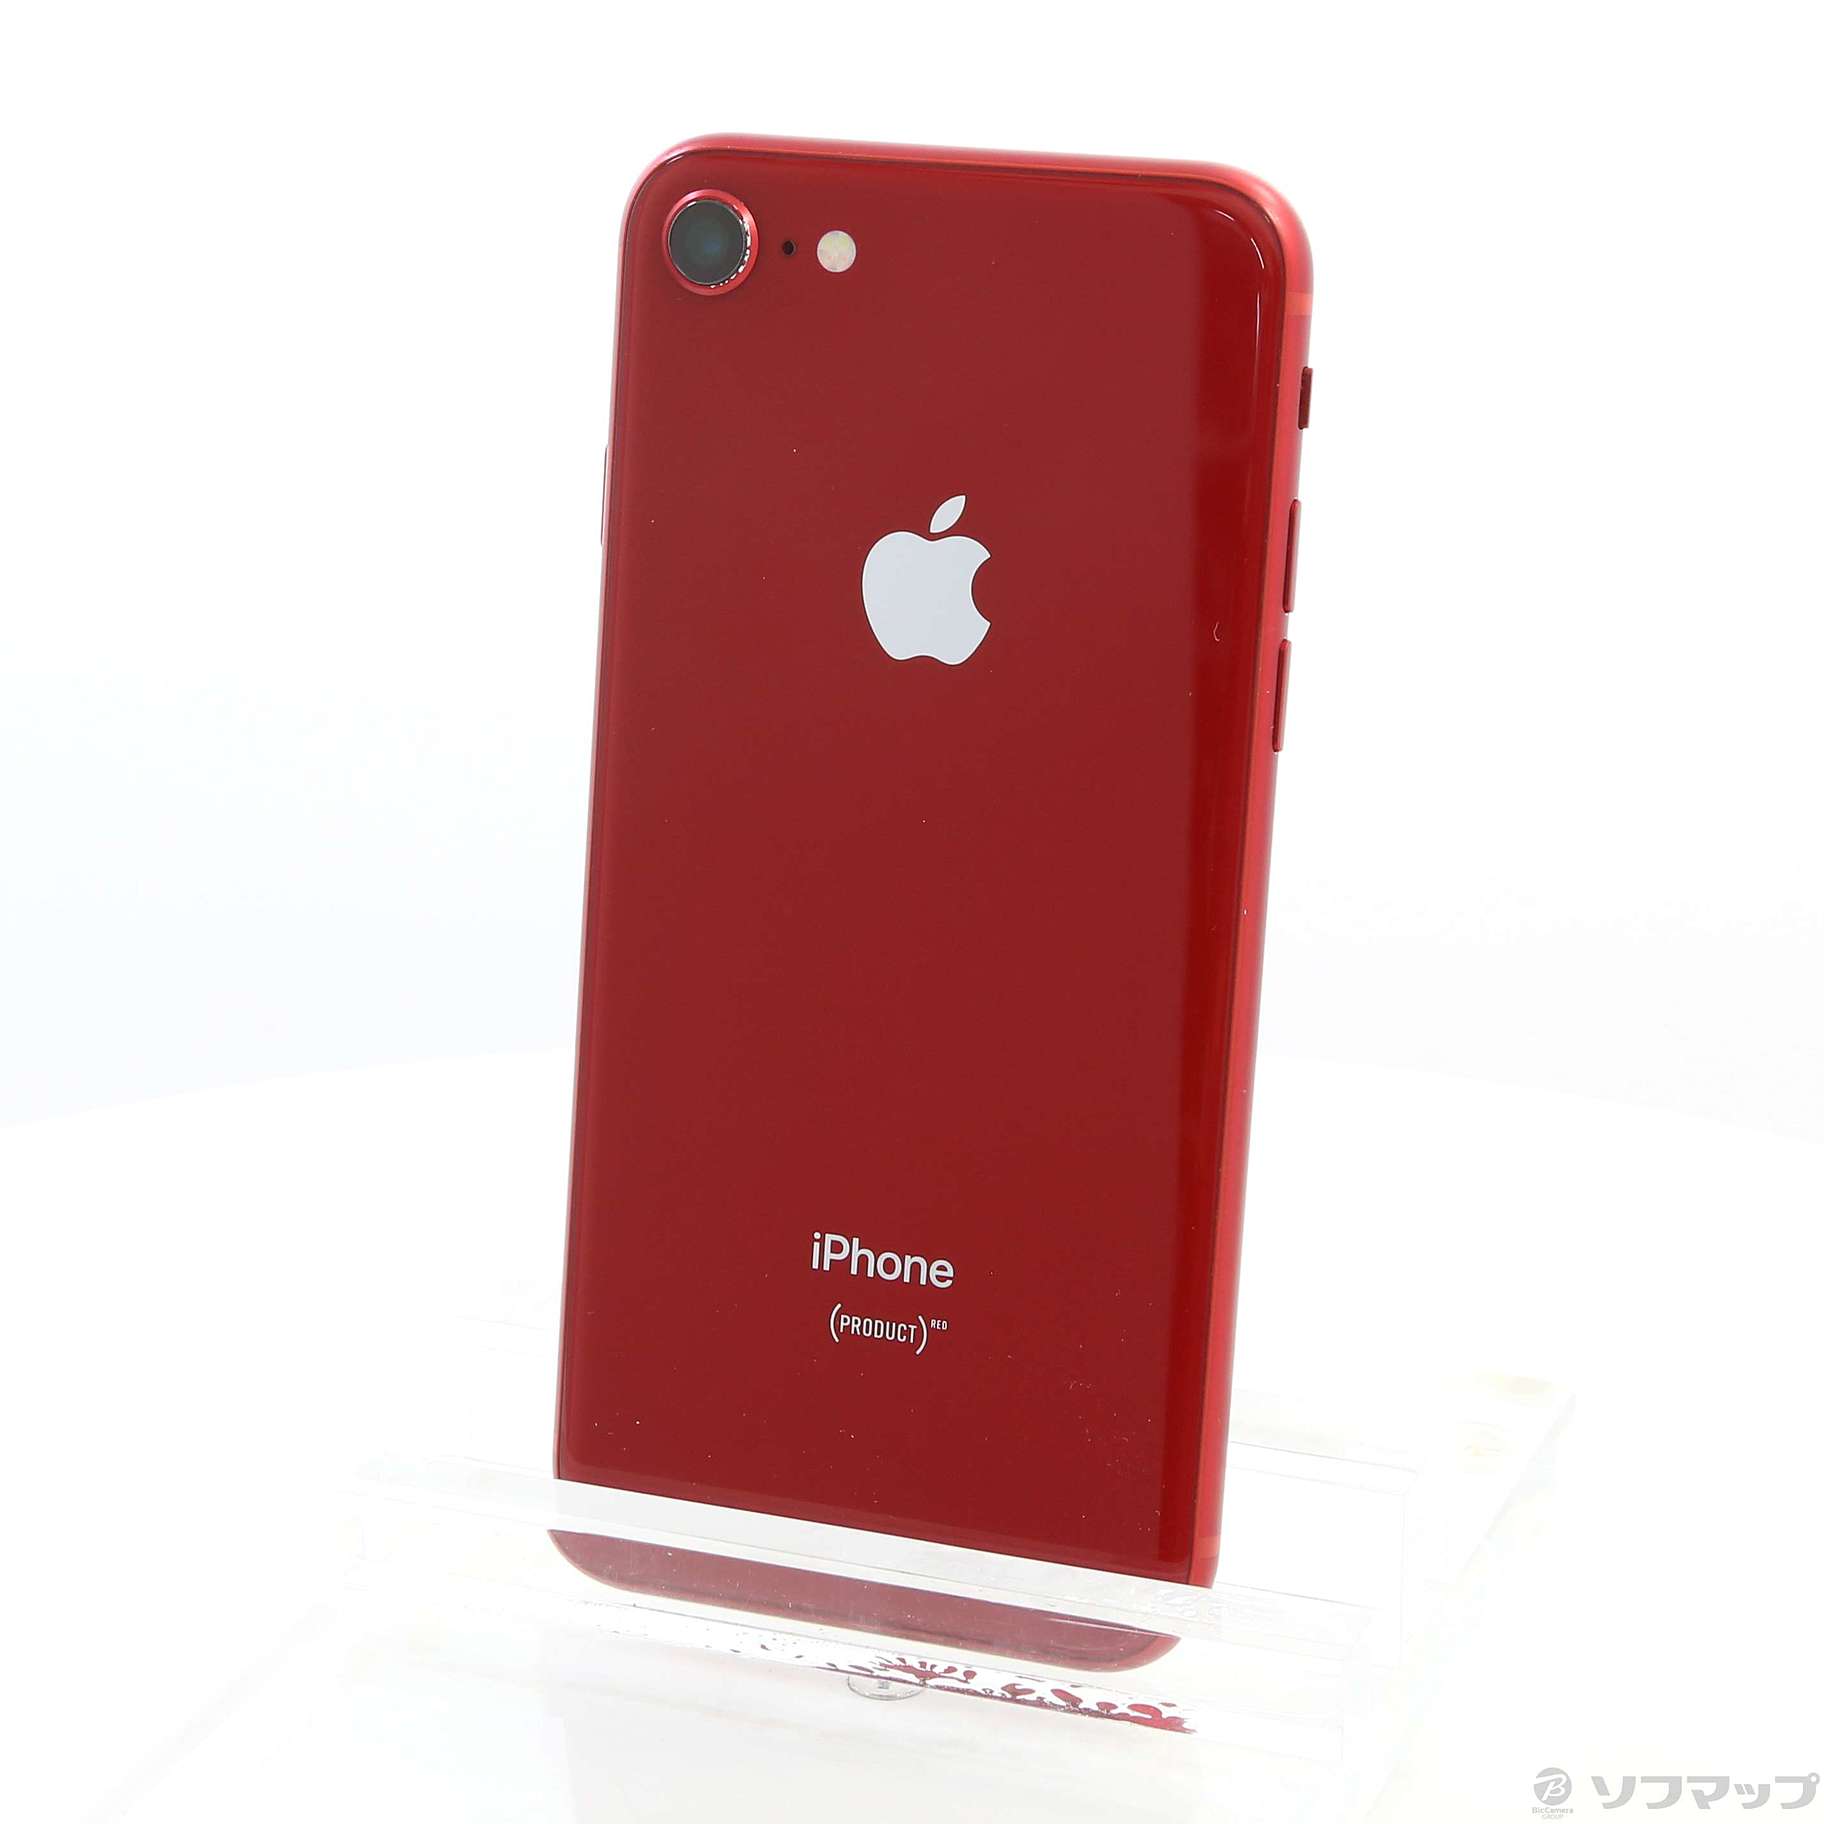 7,040円値下げiPhone 8 PRODUCT RED 256GB レッド SIMフリー